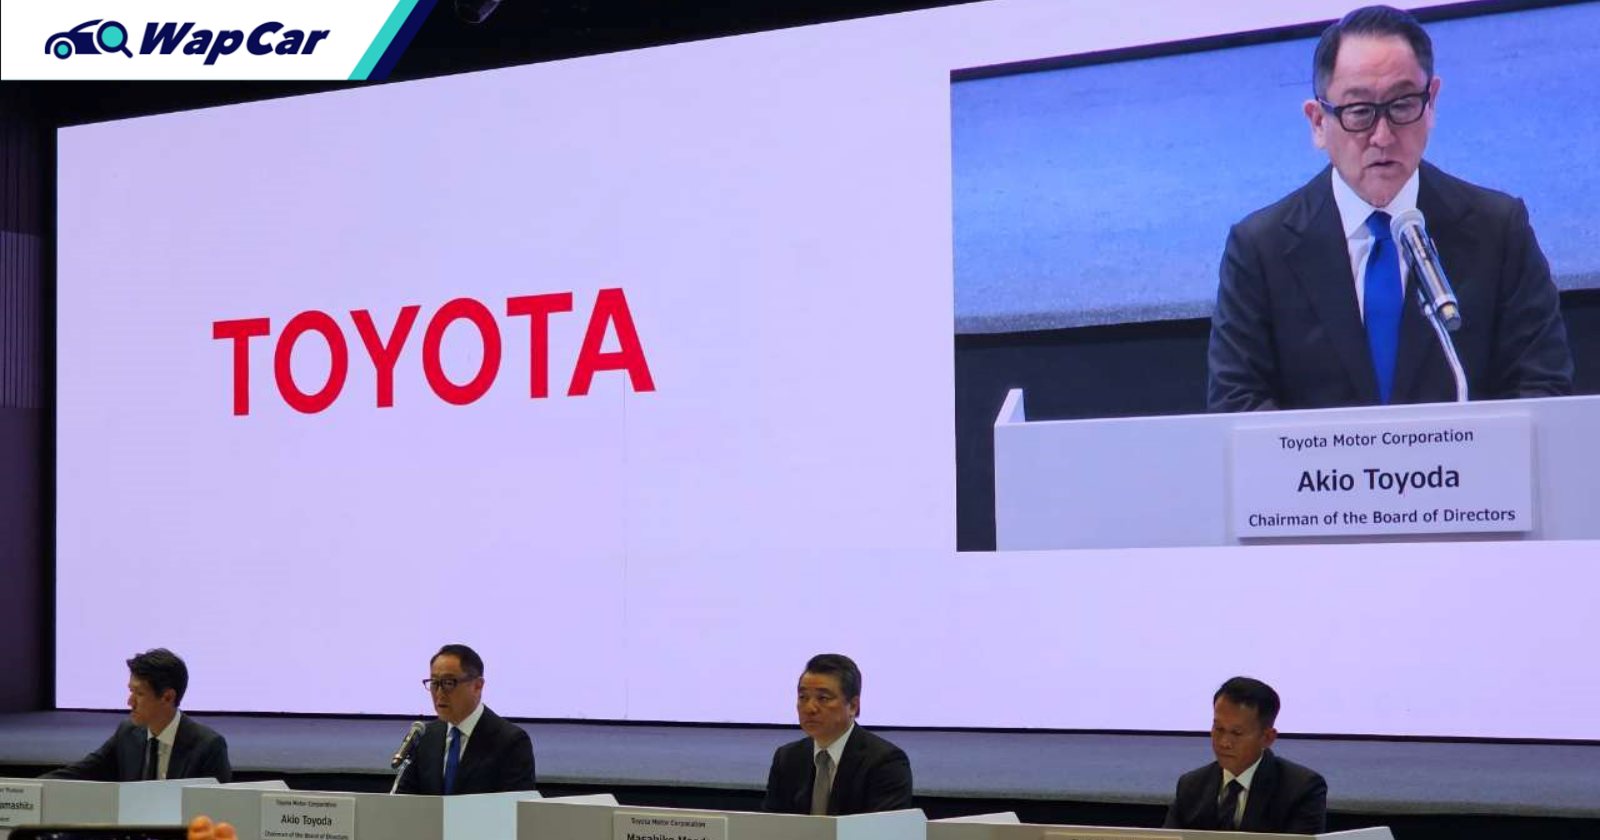 Cựu chủ tịch Toyota đưa ra câu trả lời cuối cùng về tương lai Vios sau scandal gian lận an toàn - Ảnh 3.